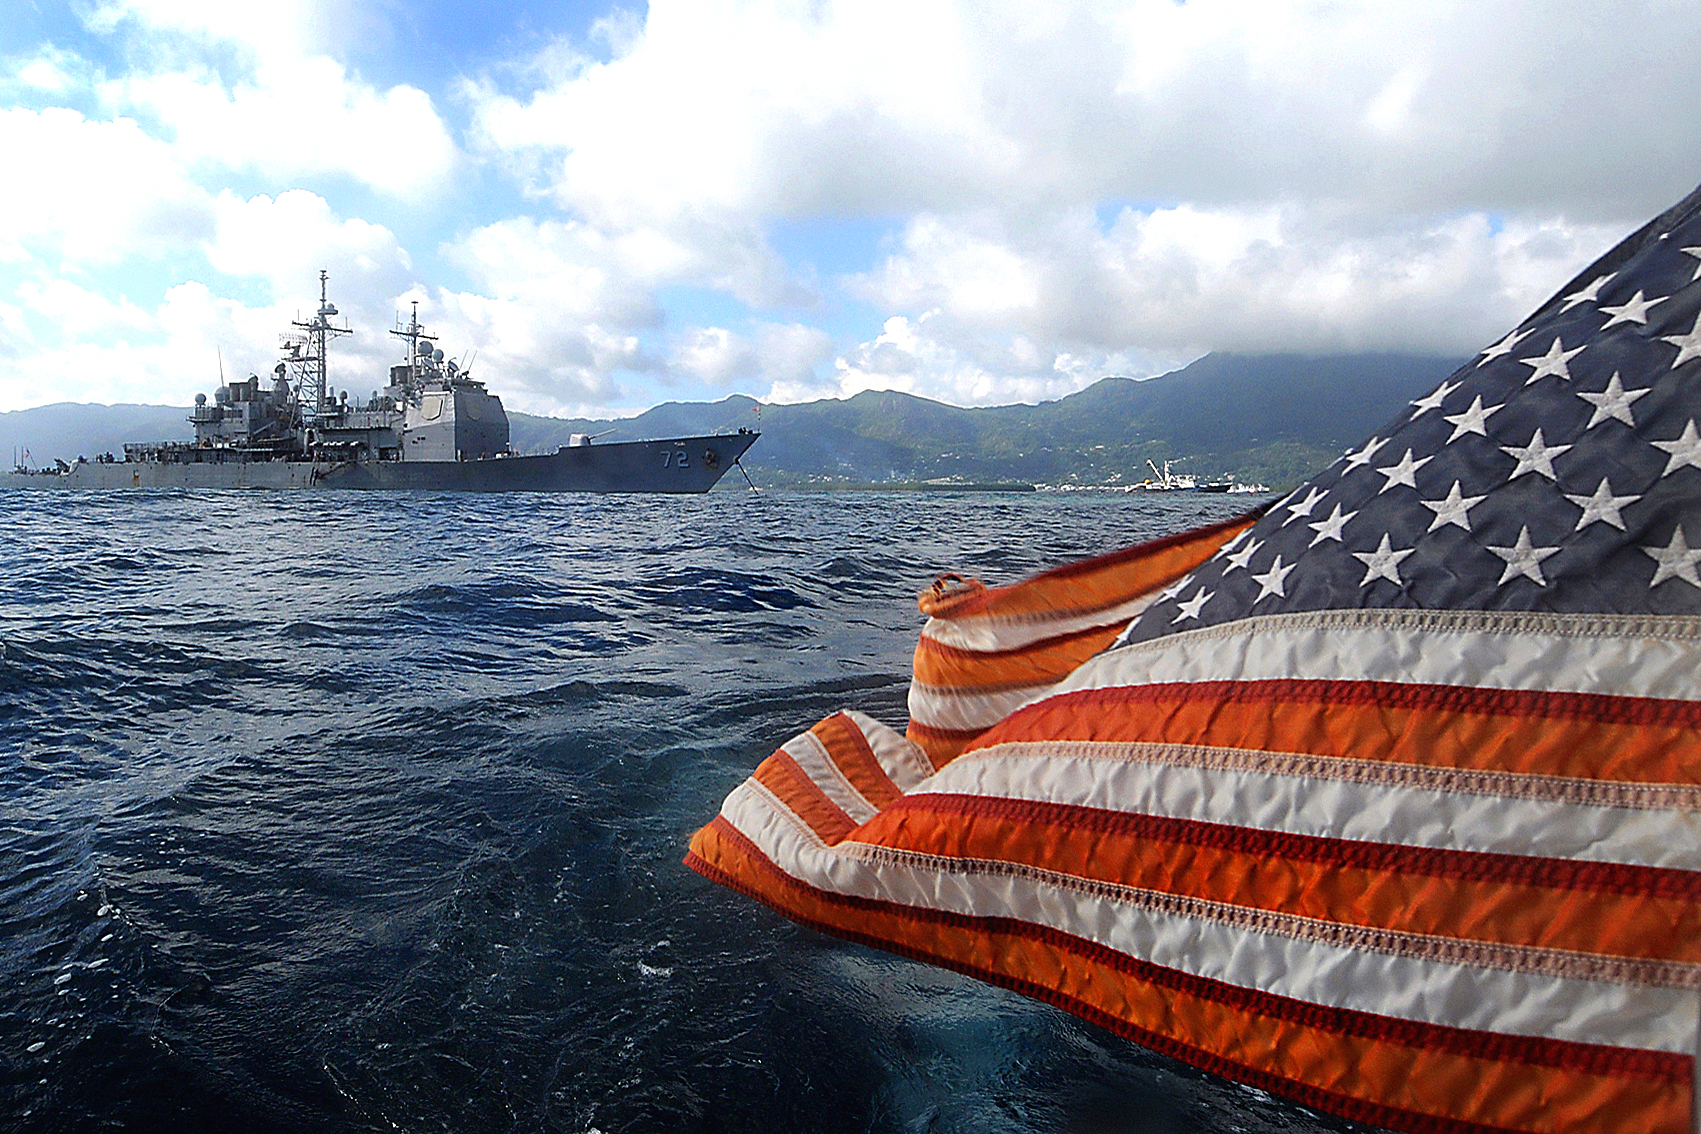 Navy photo by Mass Communication Specialist 2nd Class Jason R. Zalasky/Released)